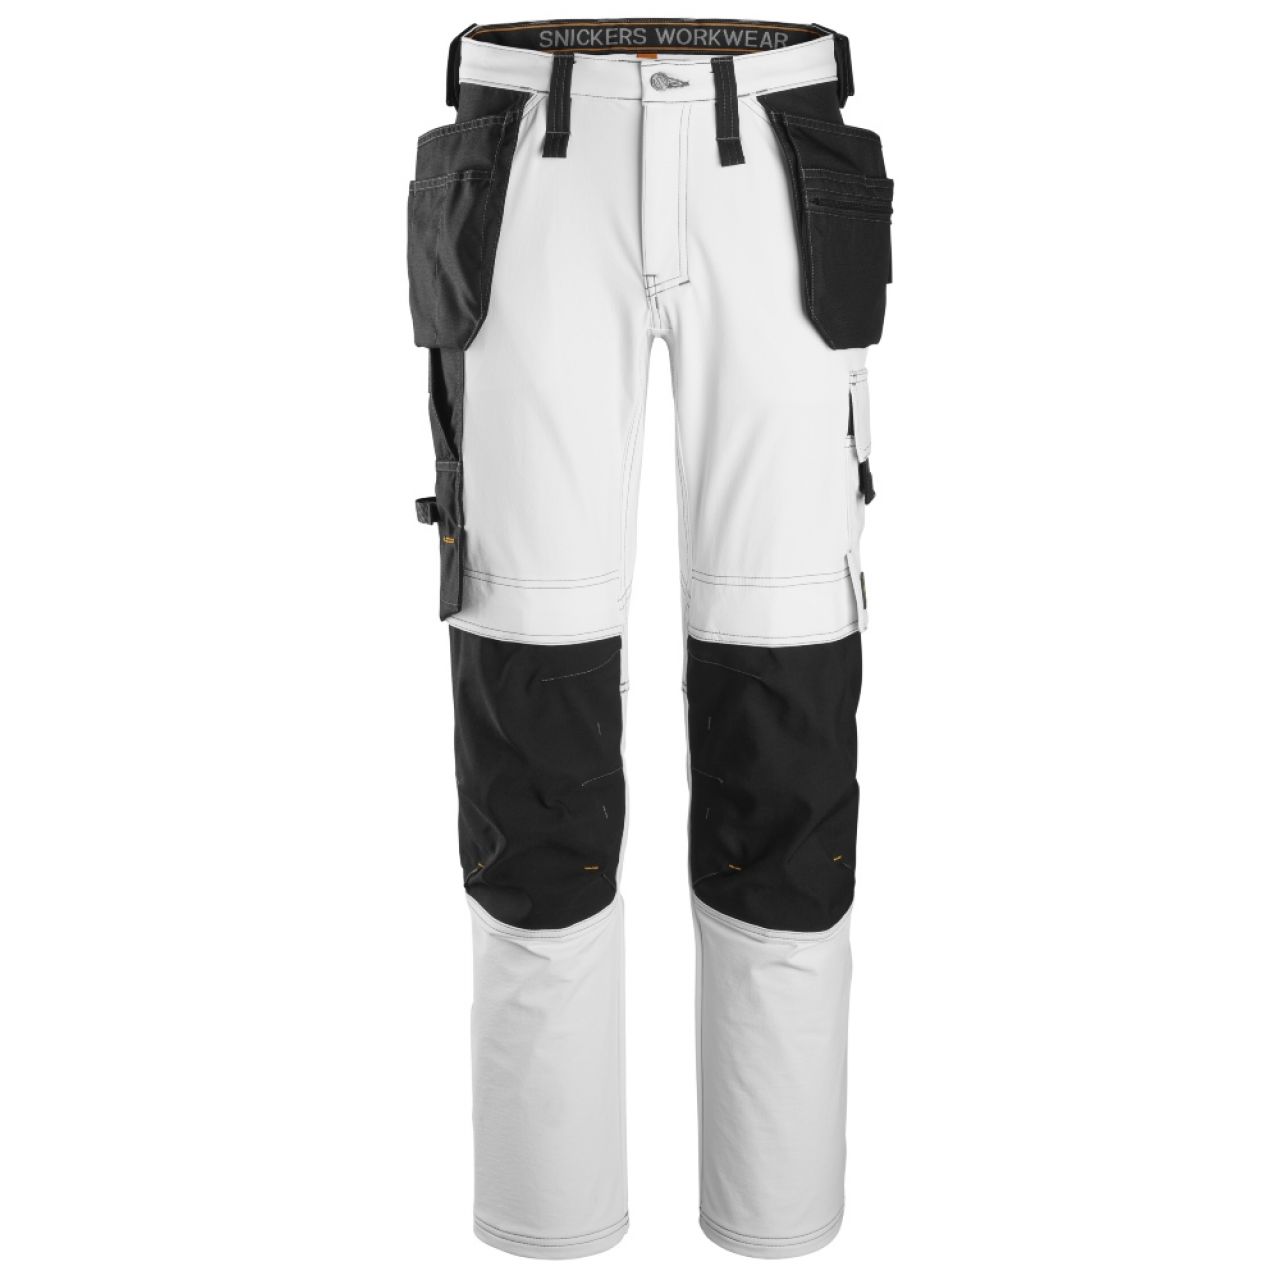 6271 Pantalones largos de trabajo elásticos completos con bolsillos flotantes AllroundWork blanco-negro talla 54